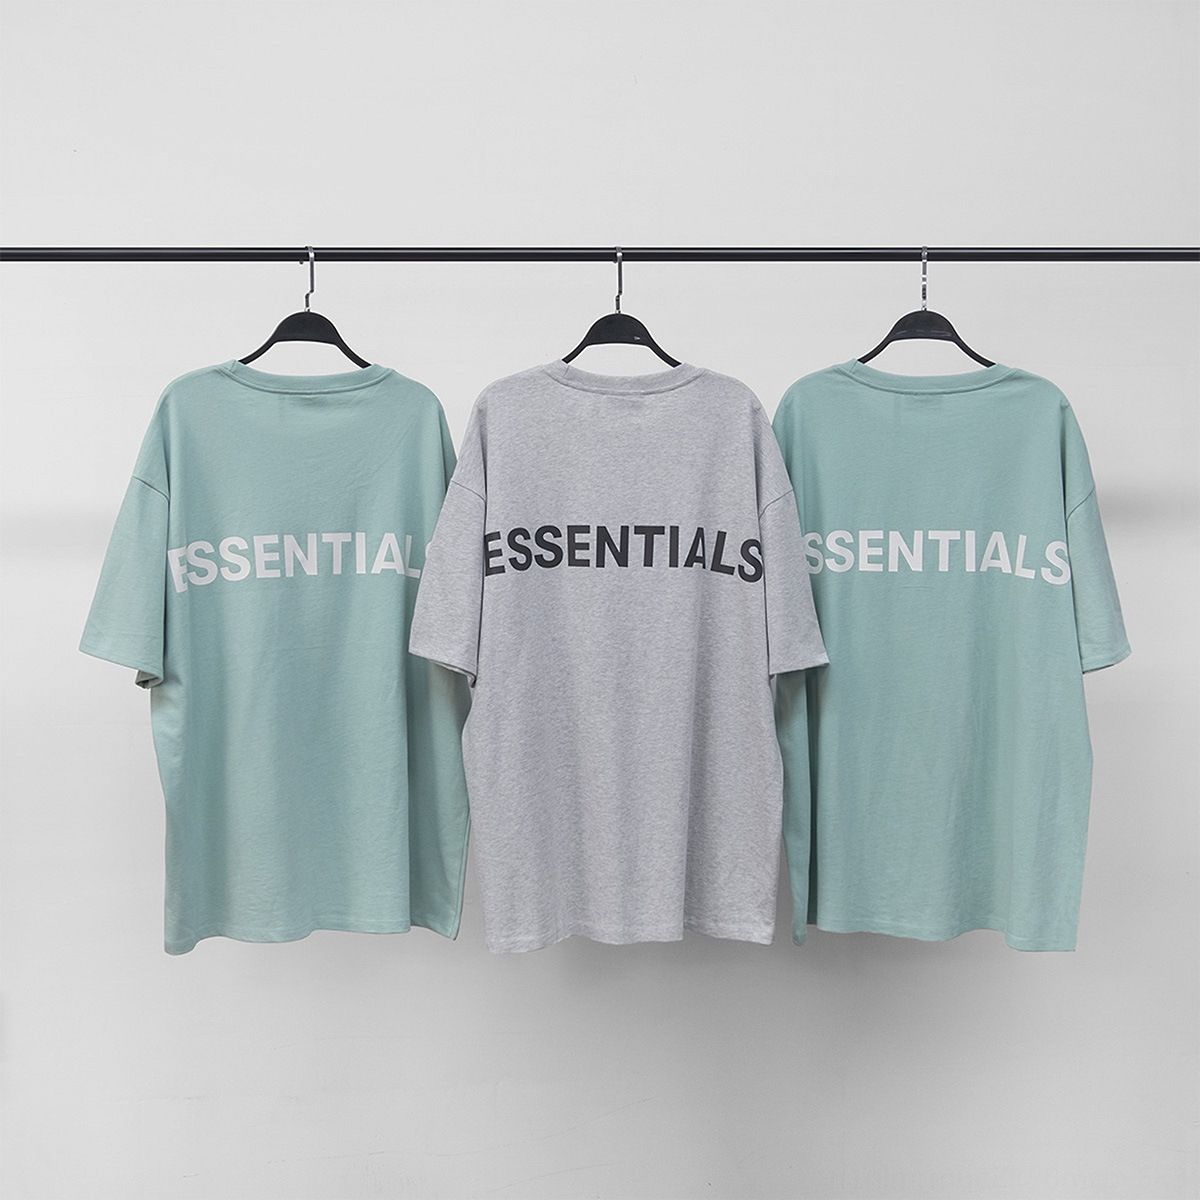 New FOG Essentials Couple T-shirt oversize cotton high street Men/'s T-shirt Hot